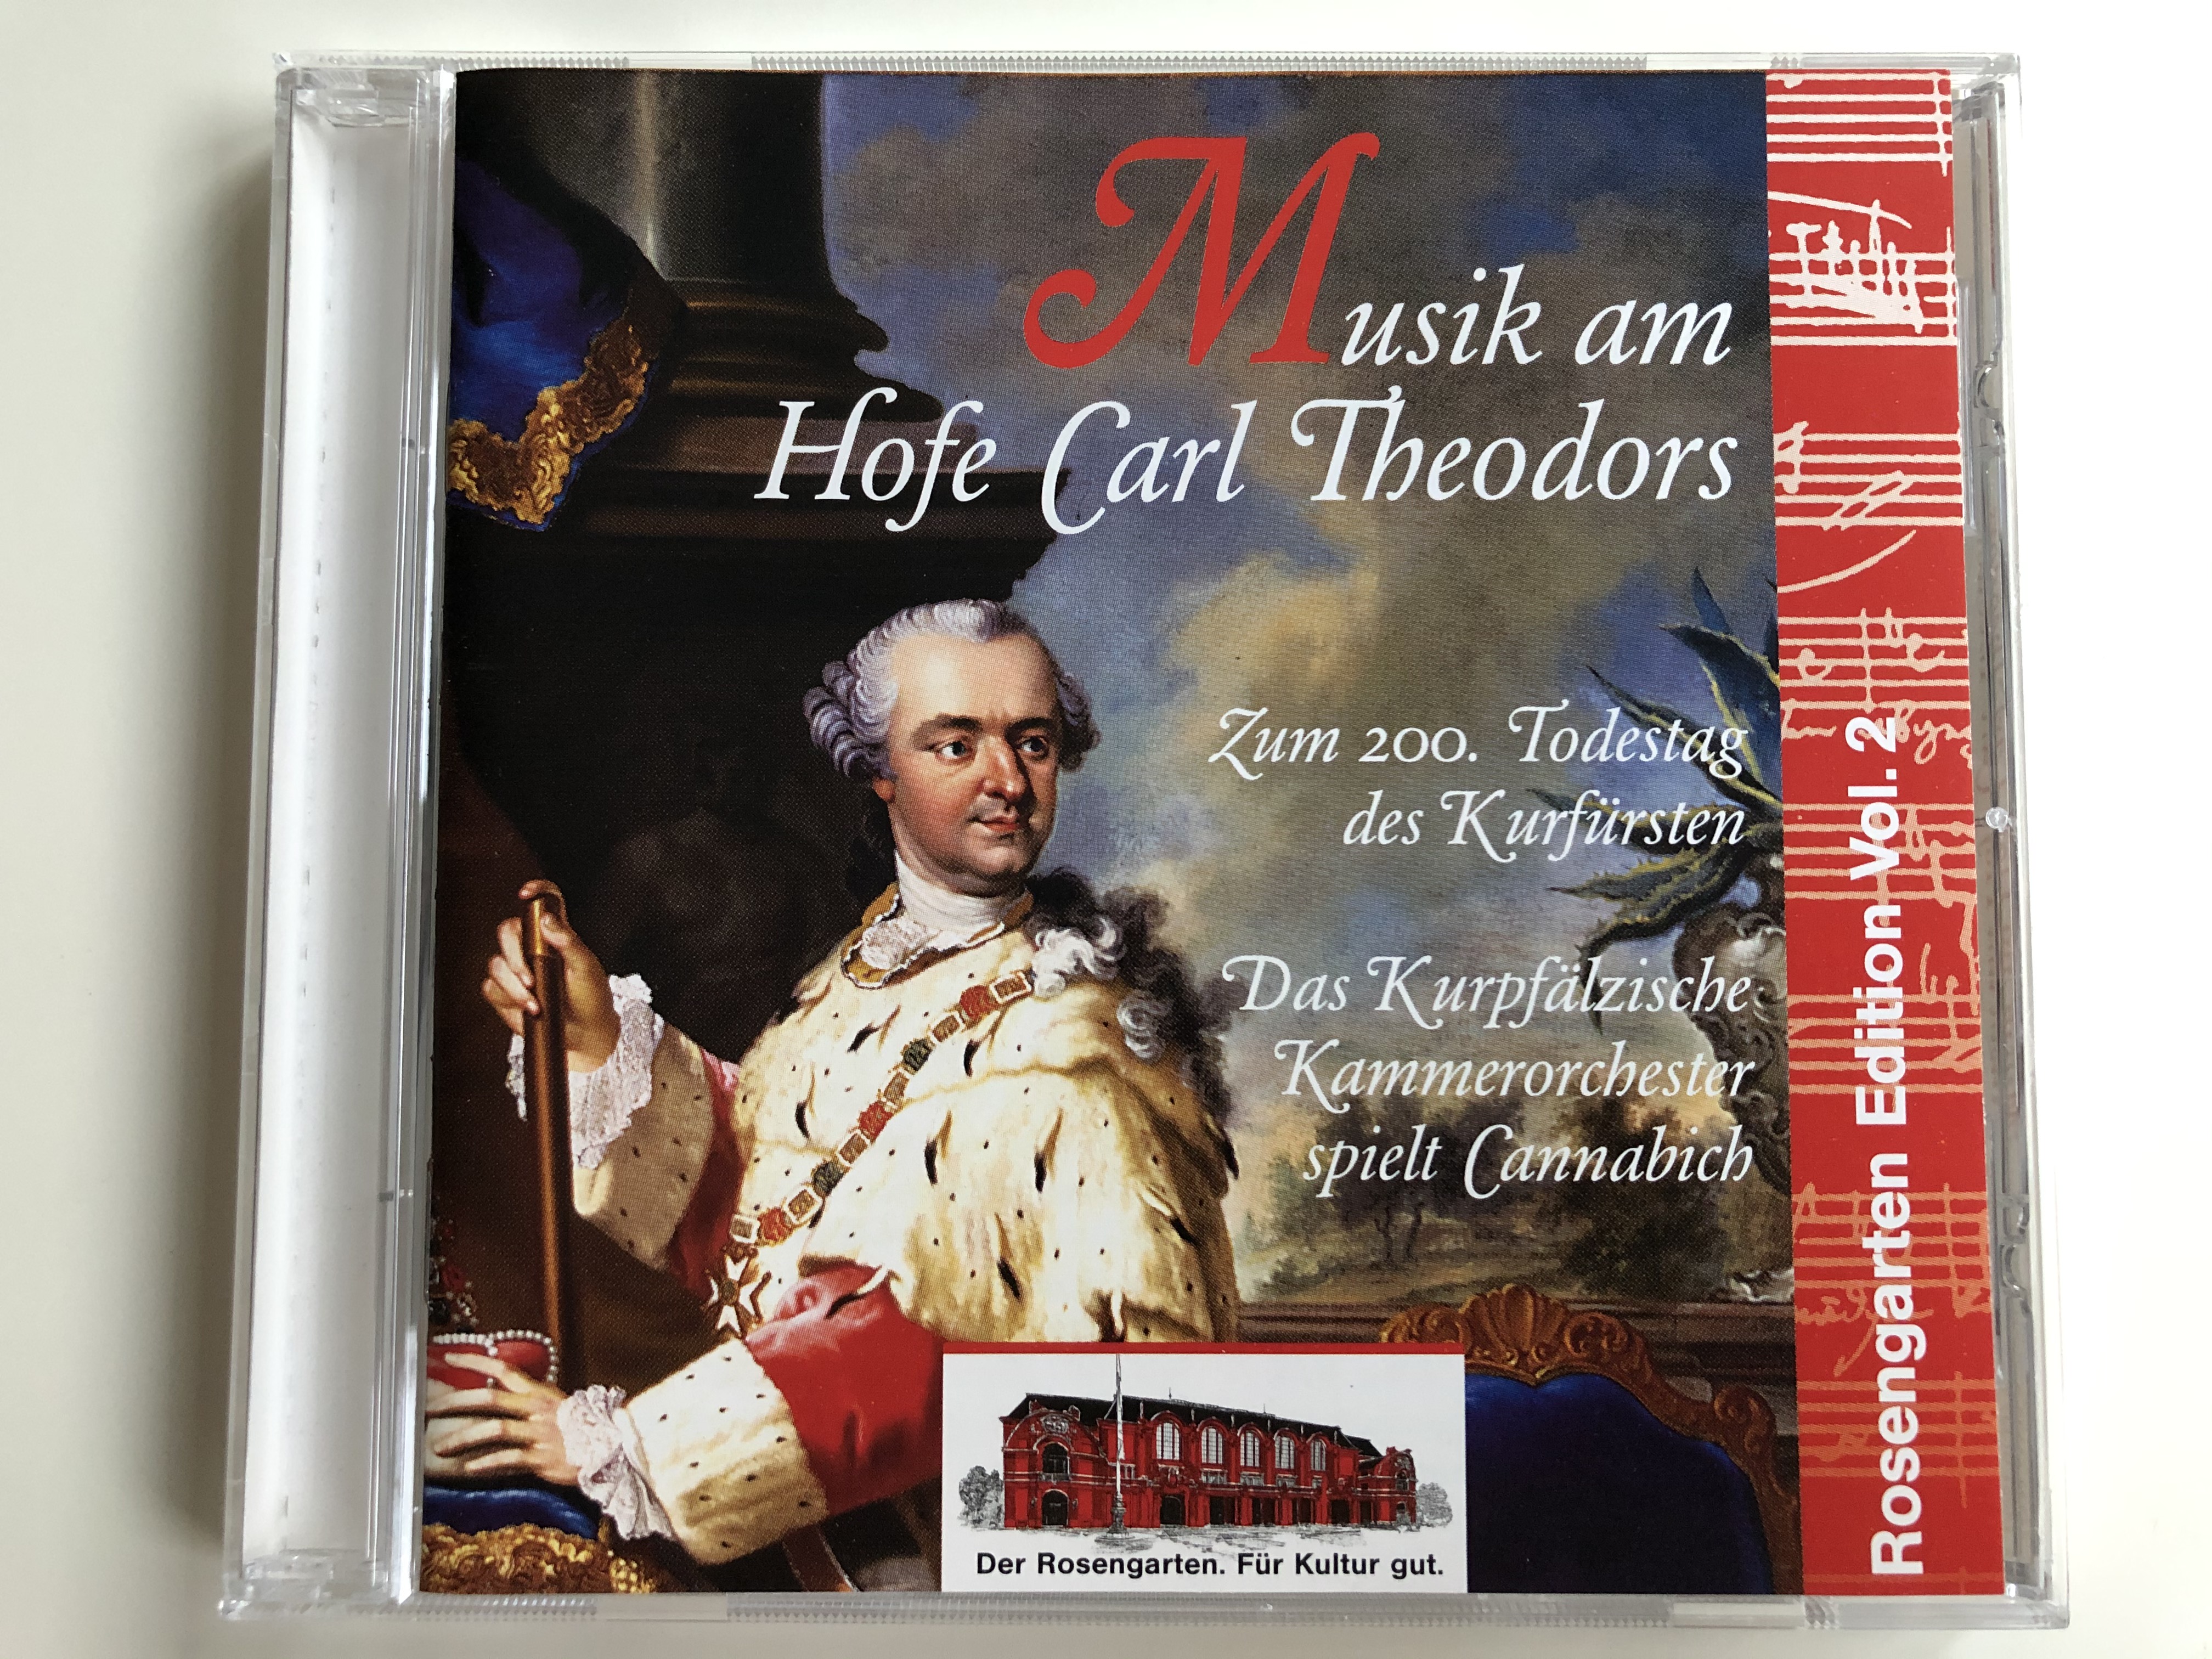 musik-am-hofe-carl-theodoros-zum-200.-todestag-des-kurfursten-das-kurpfalzische-kammerorchester-spielt-cannabich-arte-nova-audio-cd-1998-74321-61337-2-1-.jpg